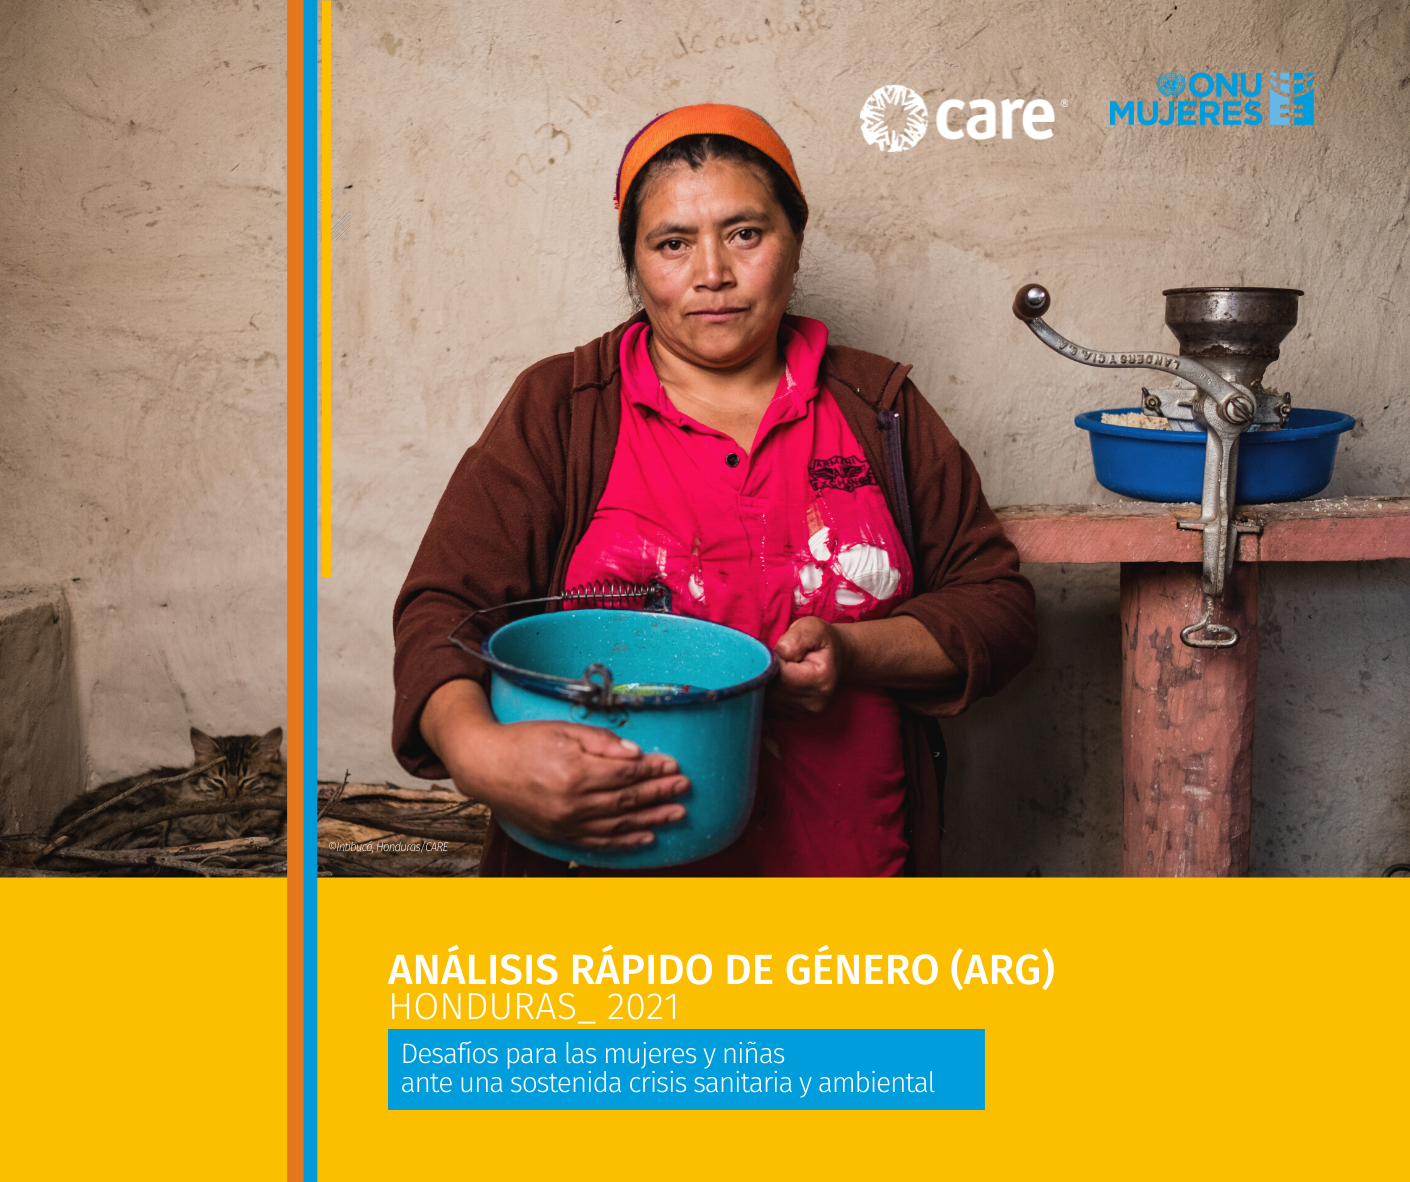 Presentación del Estudio Análisis Rápido de Género (ARG) Honduras 2021: “Desafíos para las mujeres y niñas ante una sostenida crisis sanitaria y ambiental”